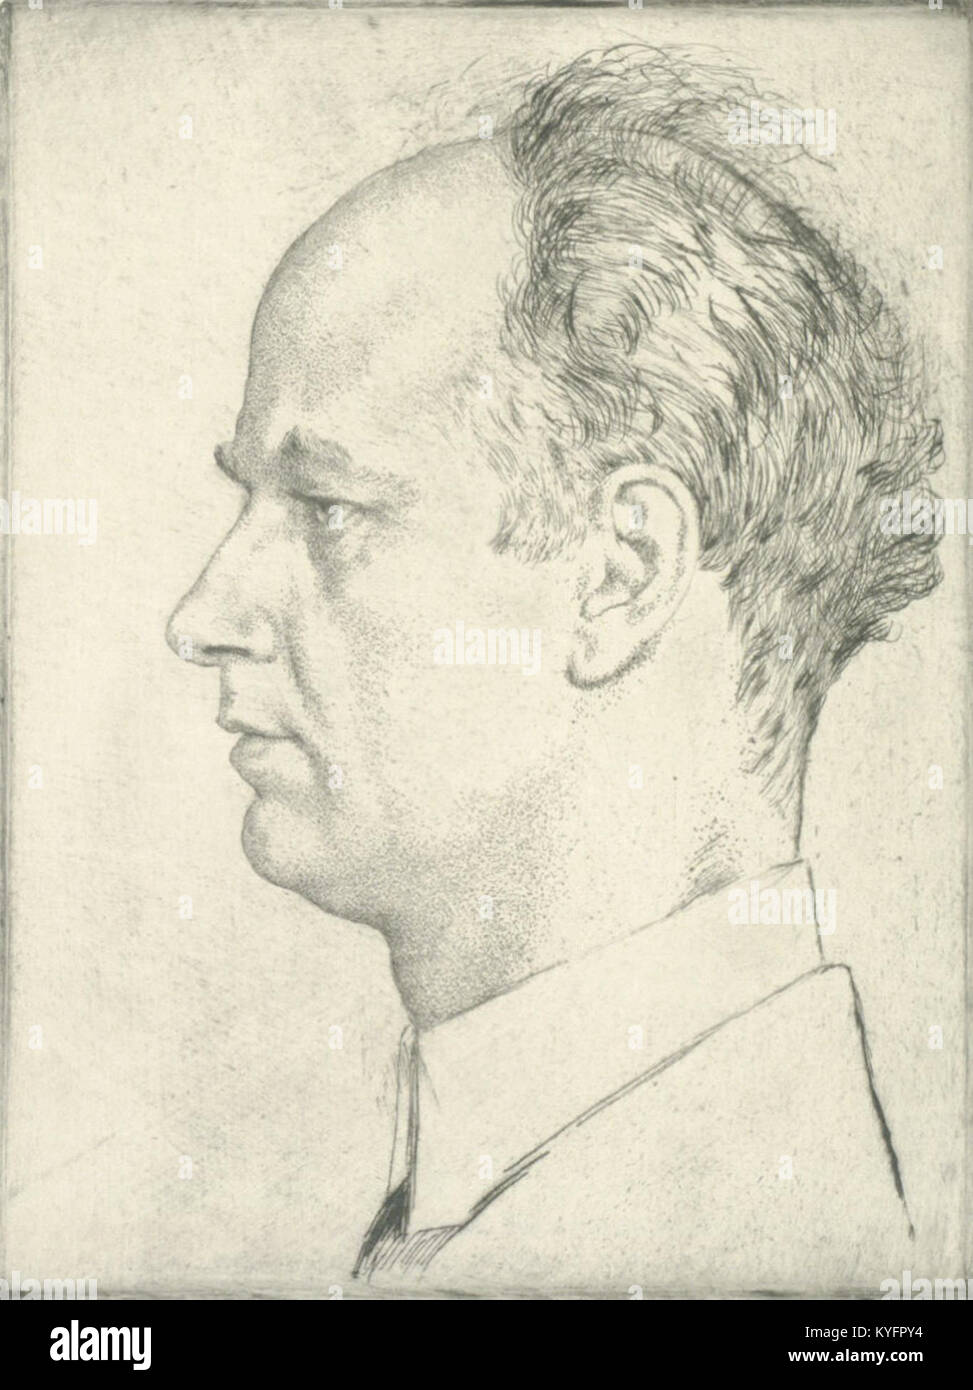 Wilhelm Furtwängler by Emil Orlik Stock Photo